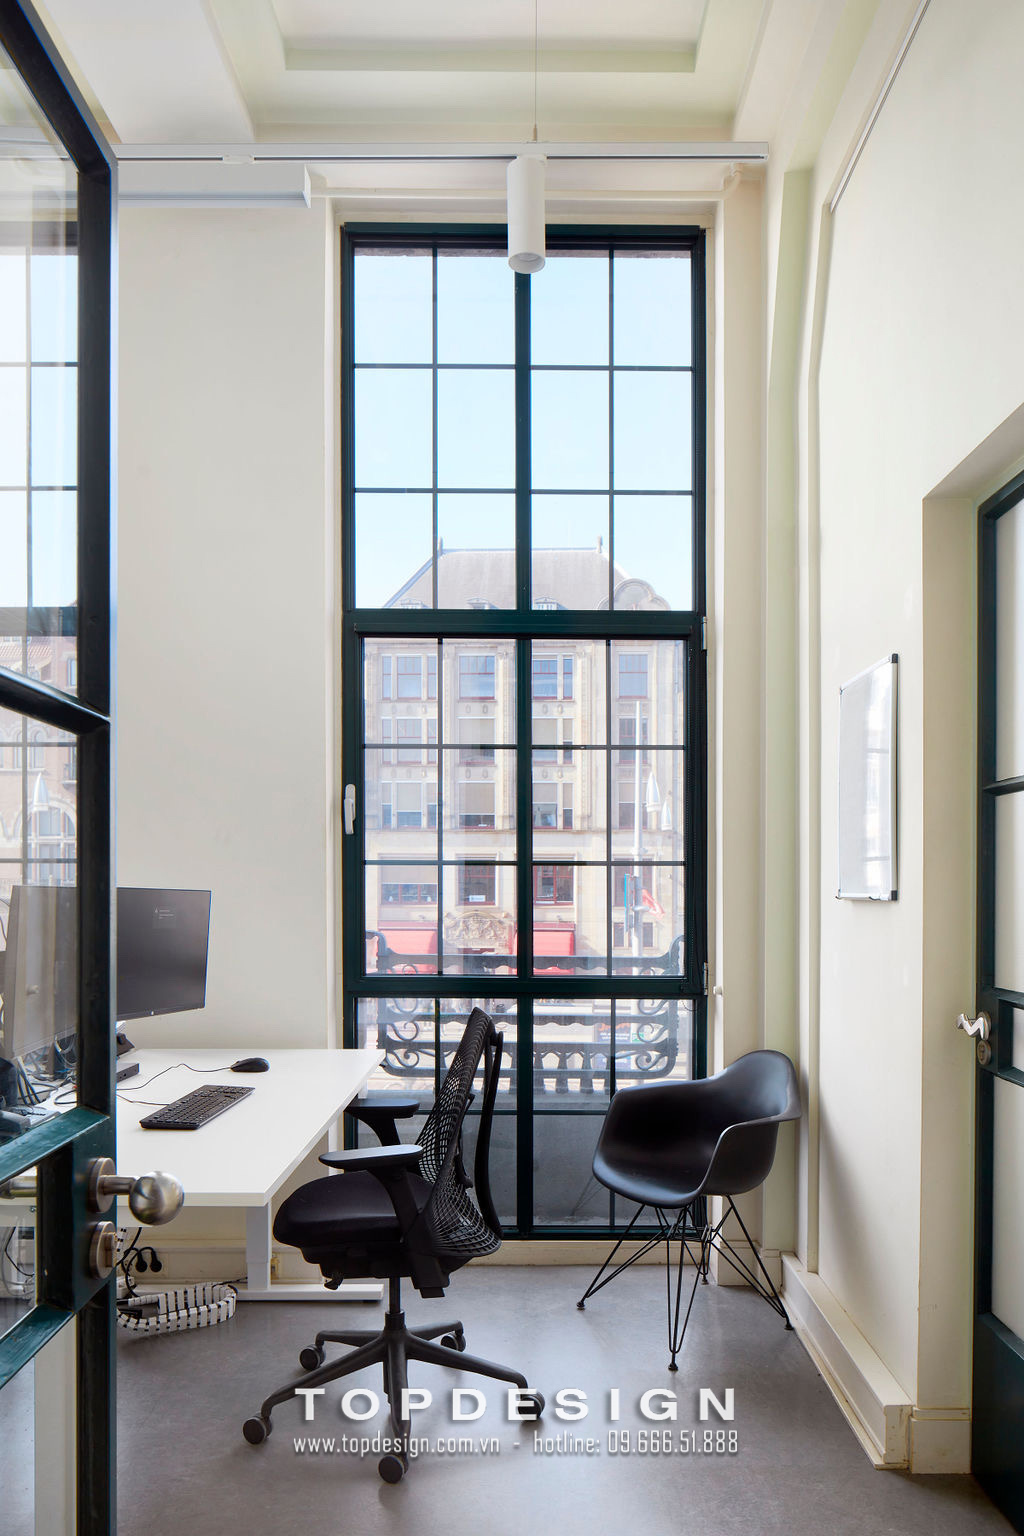 11.Thiết kế nội thất văn phòng công ty công nghệ thoải mái, riêng tư_TOPDESIGN